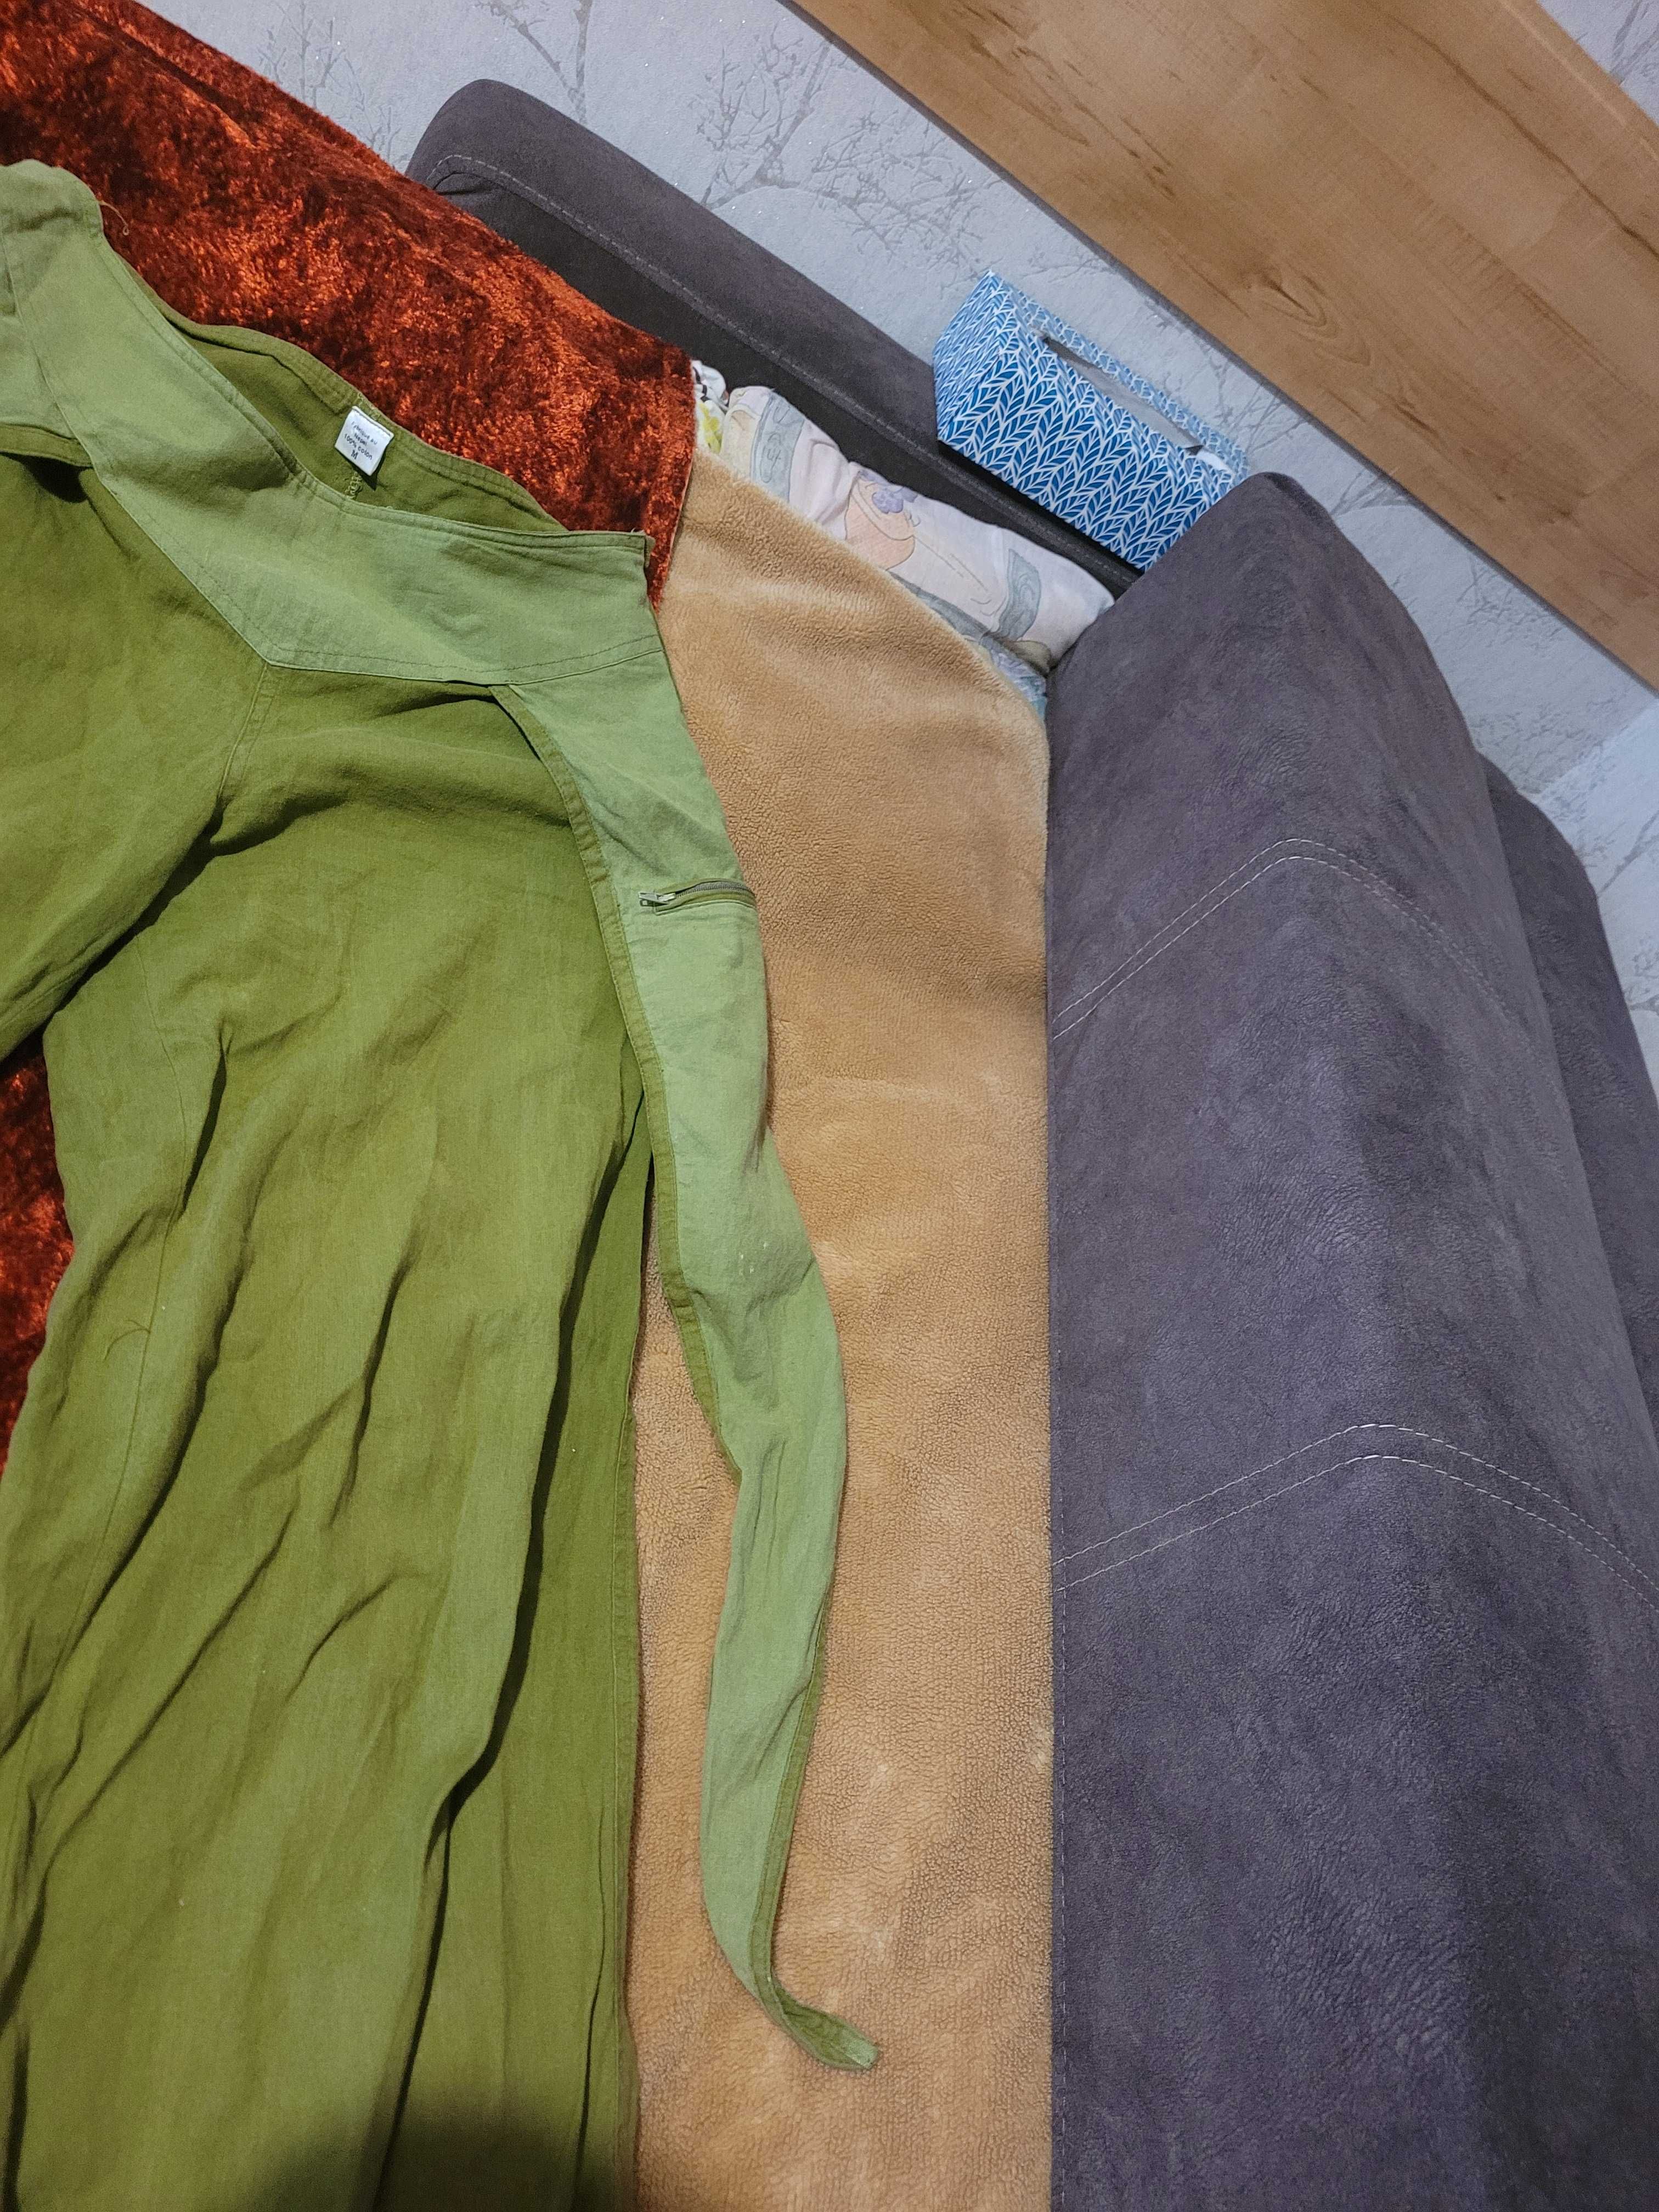 Spodnie szarawary, luźne, M, zielone